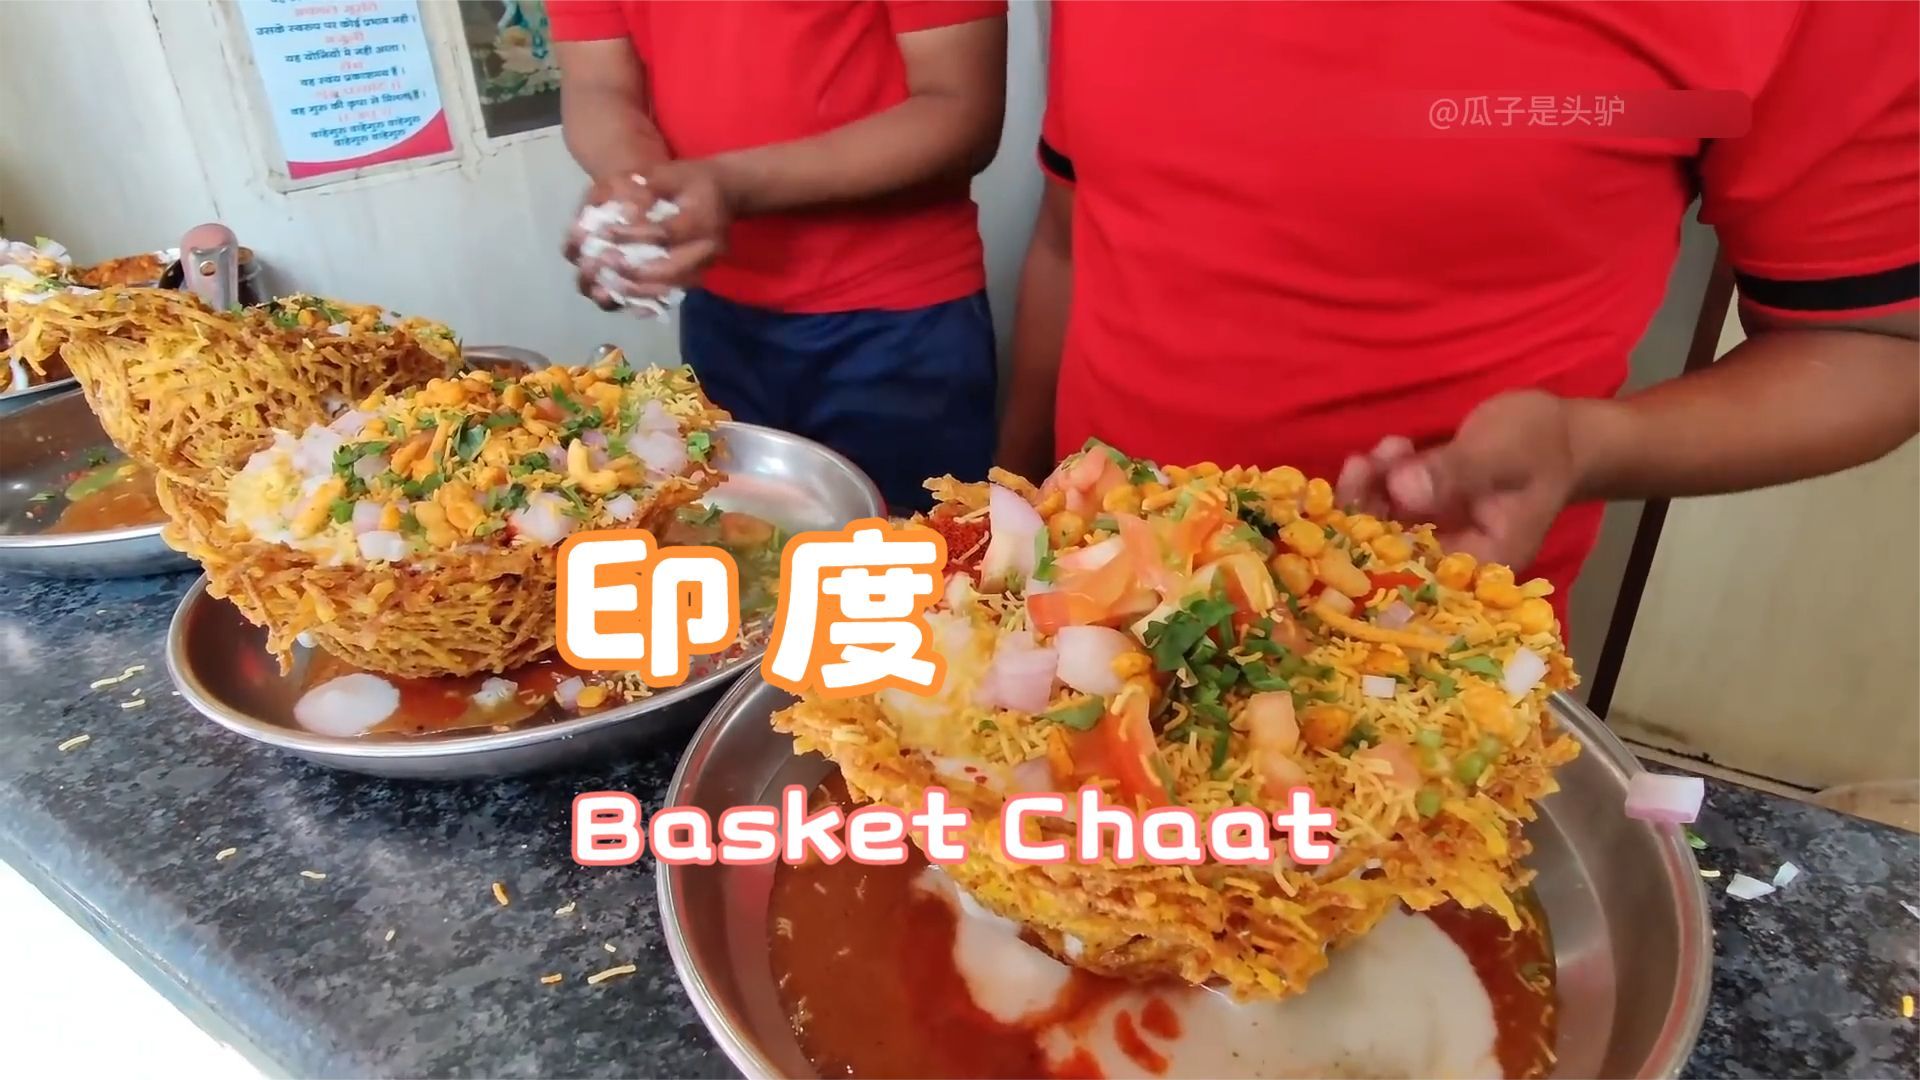 印度街头流行美食Basket Chaat 让你望眼欲穿